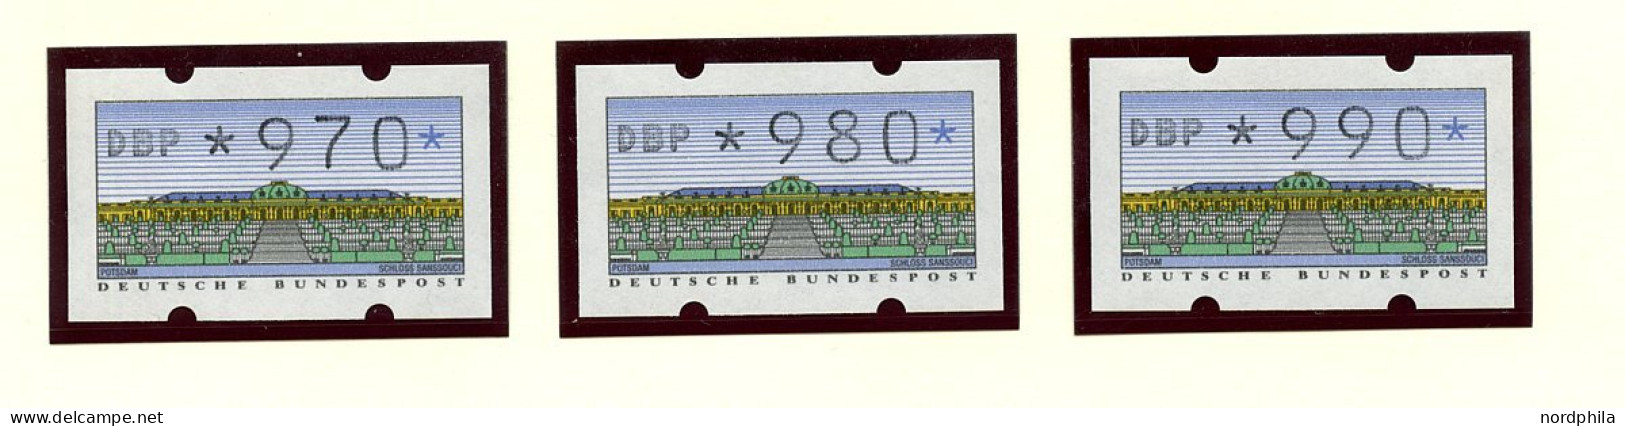 AUTOMATENMARKEN 2 Type 1.2 , Bundesrepublik Deutschland 1993, Zweiter Automatensatz Type 1.2. 98 Werte. Werte In Zehners - Machine Labels [ATM]